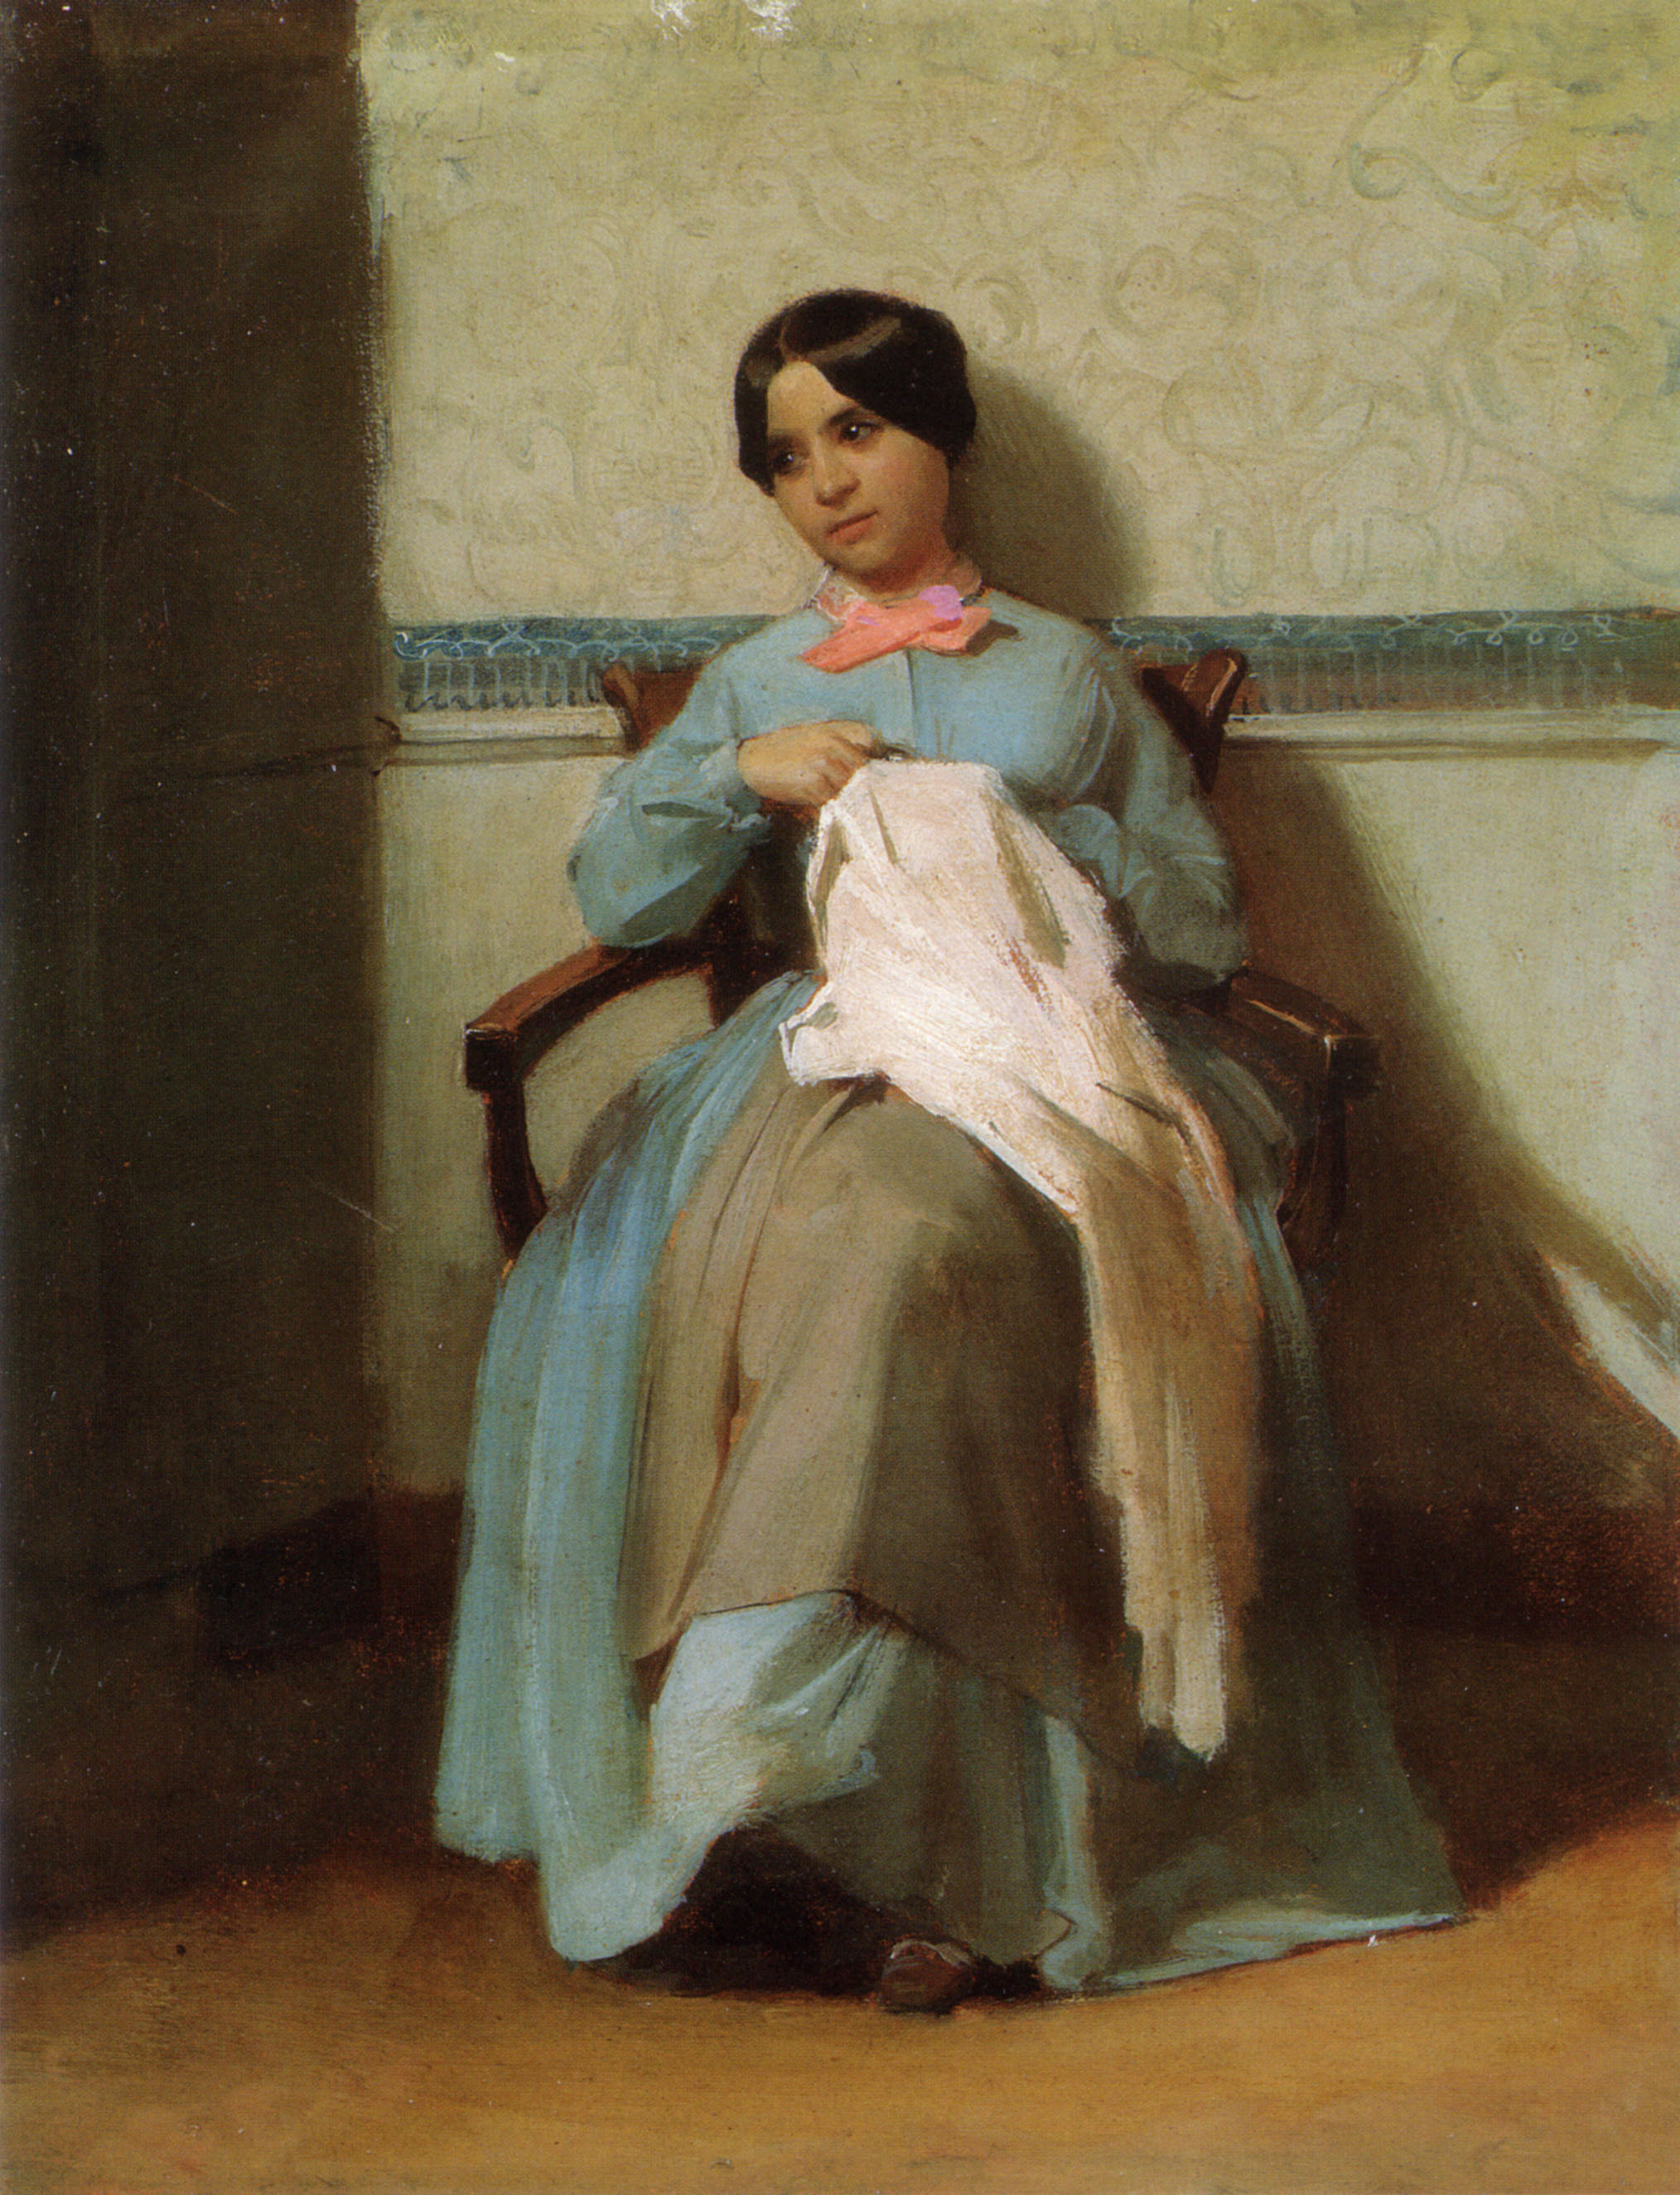 William-Adolphe Bouguereau (1825-1905) - A Portrait of Léonie Bouguereau (1850)